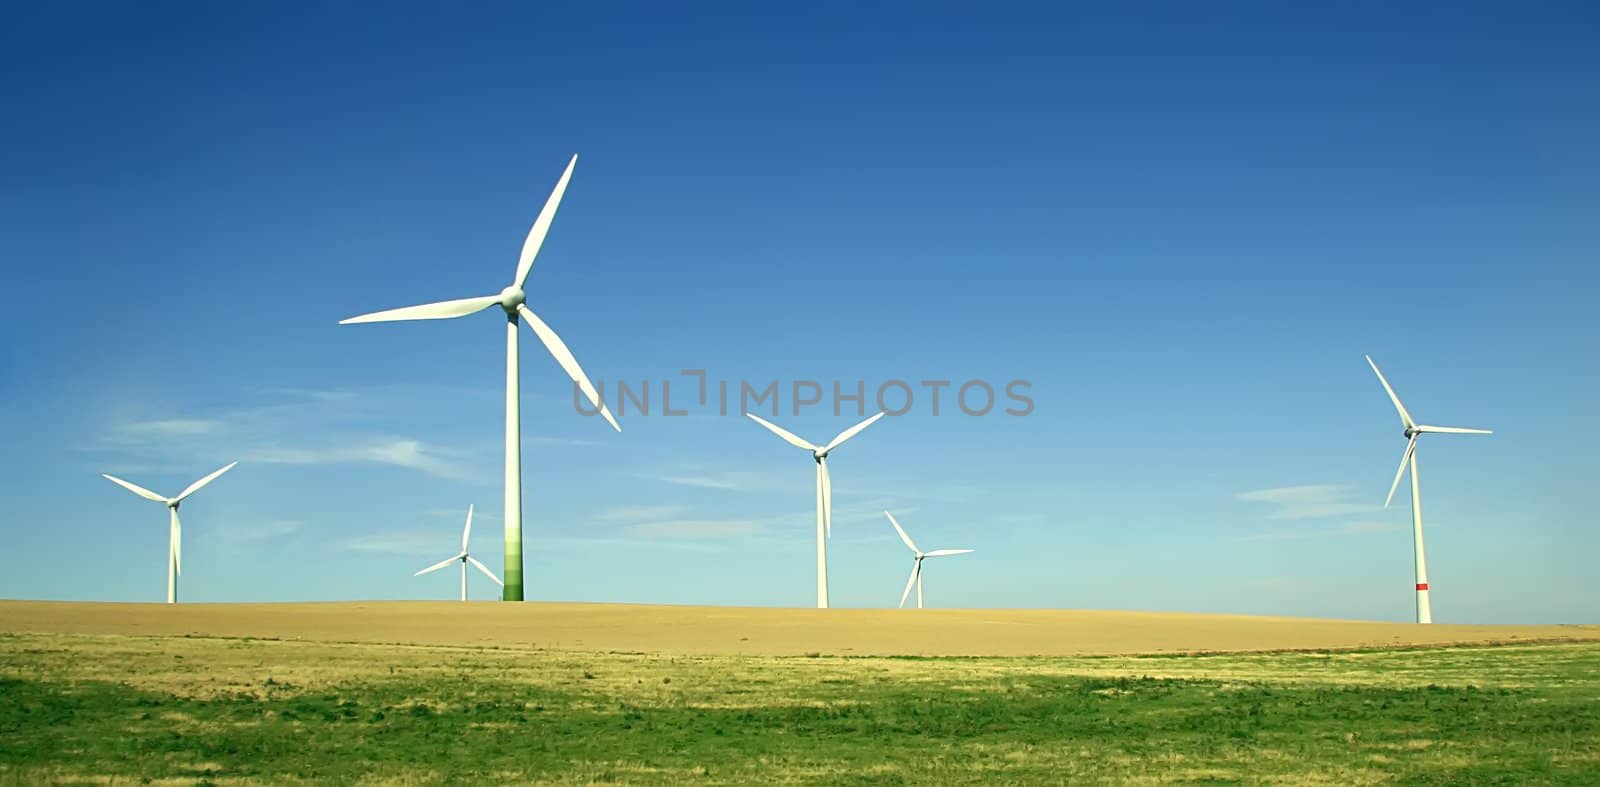 Wind turbines by rachwal